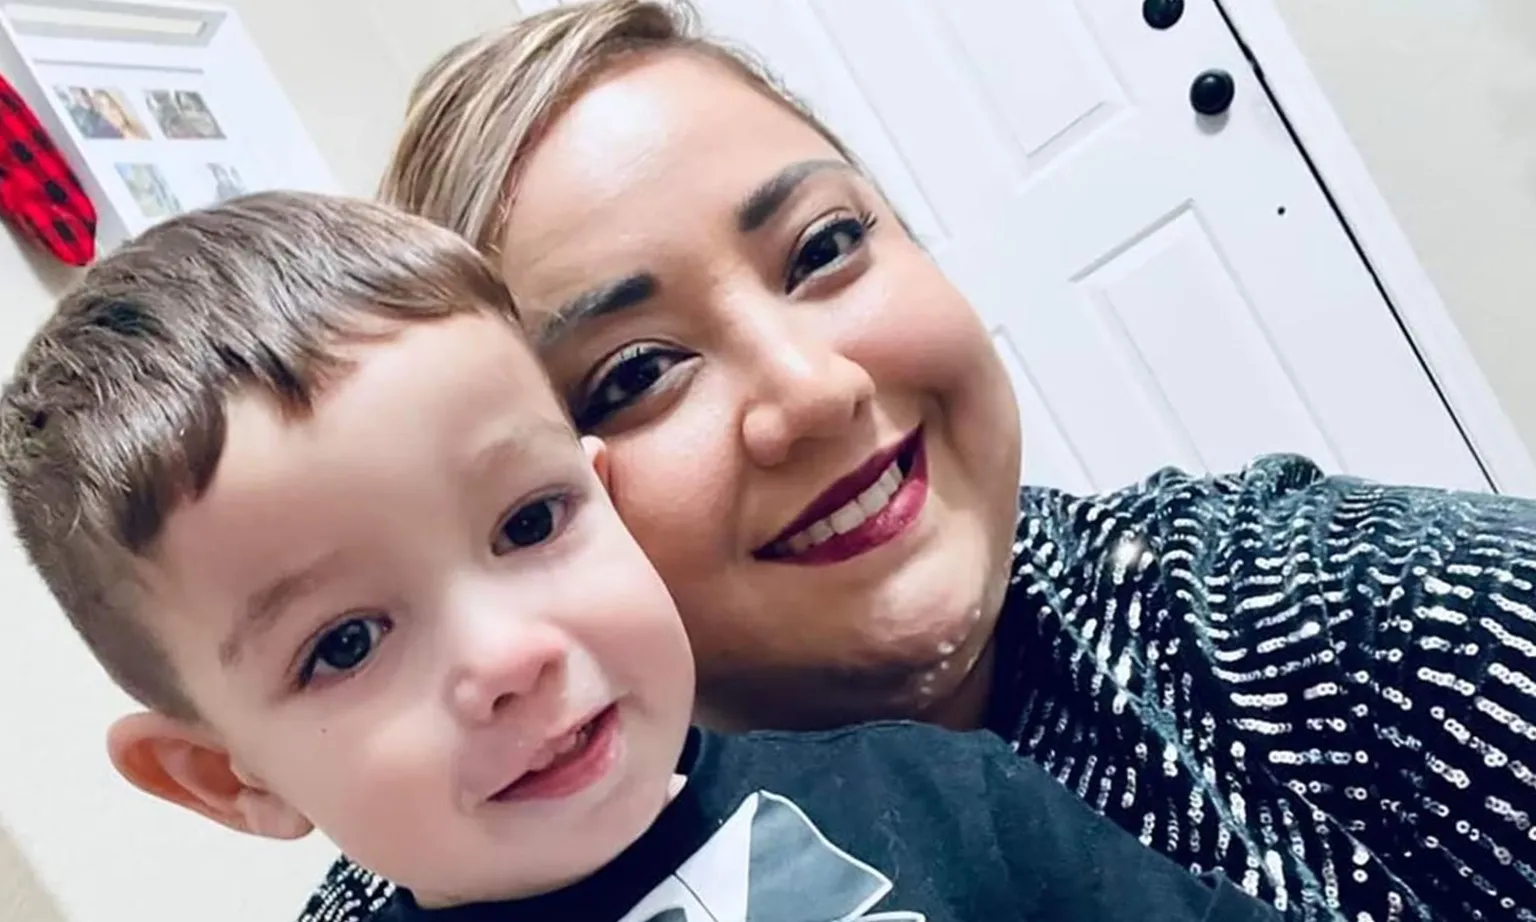 Mỹ: Quẫn trí, người mẹ bắt con trai nói 'tạm biệt bố' trước máy quay rồi bắn con và tự sát